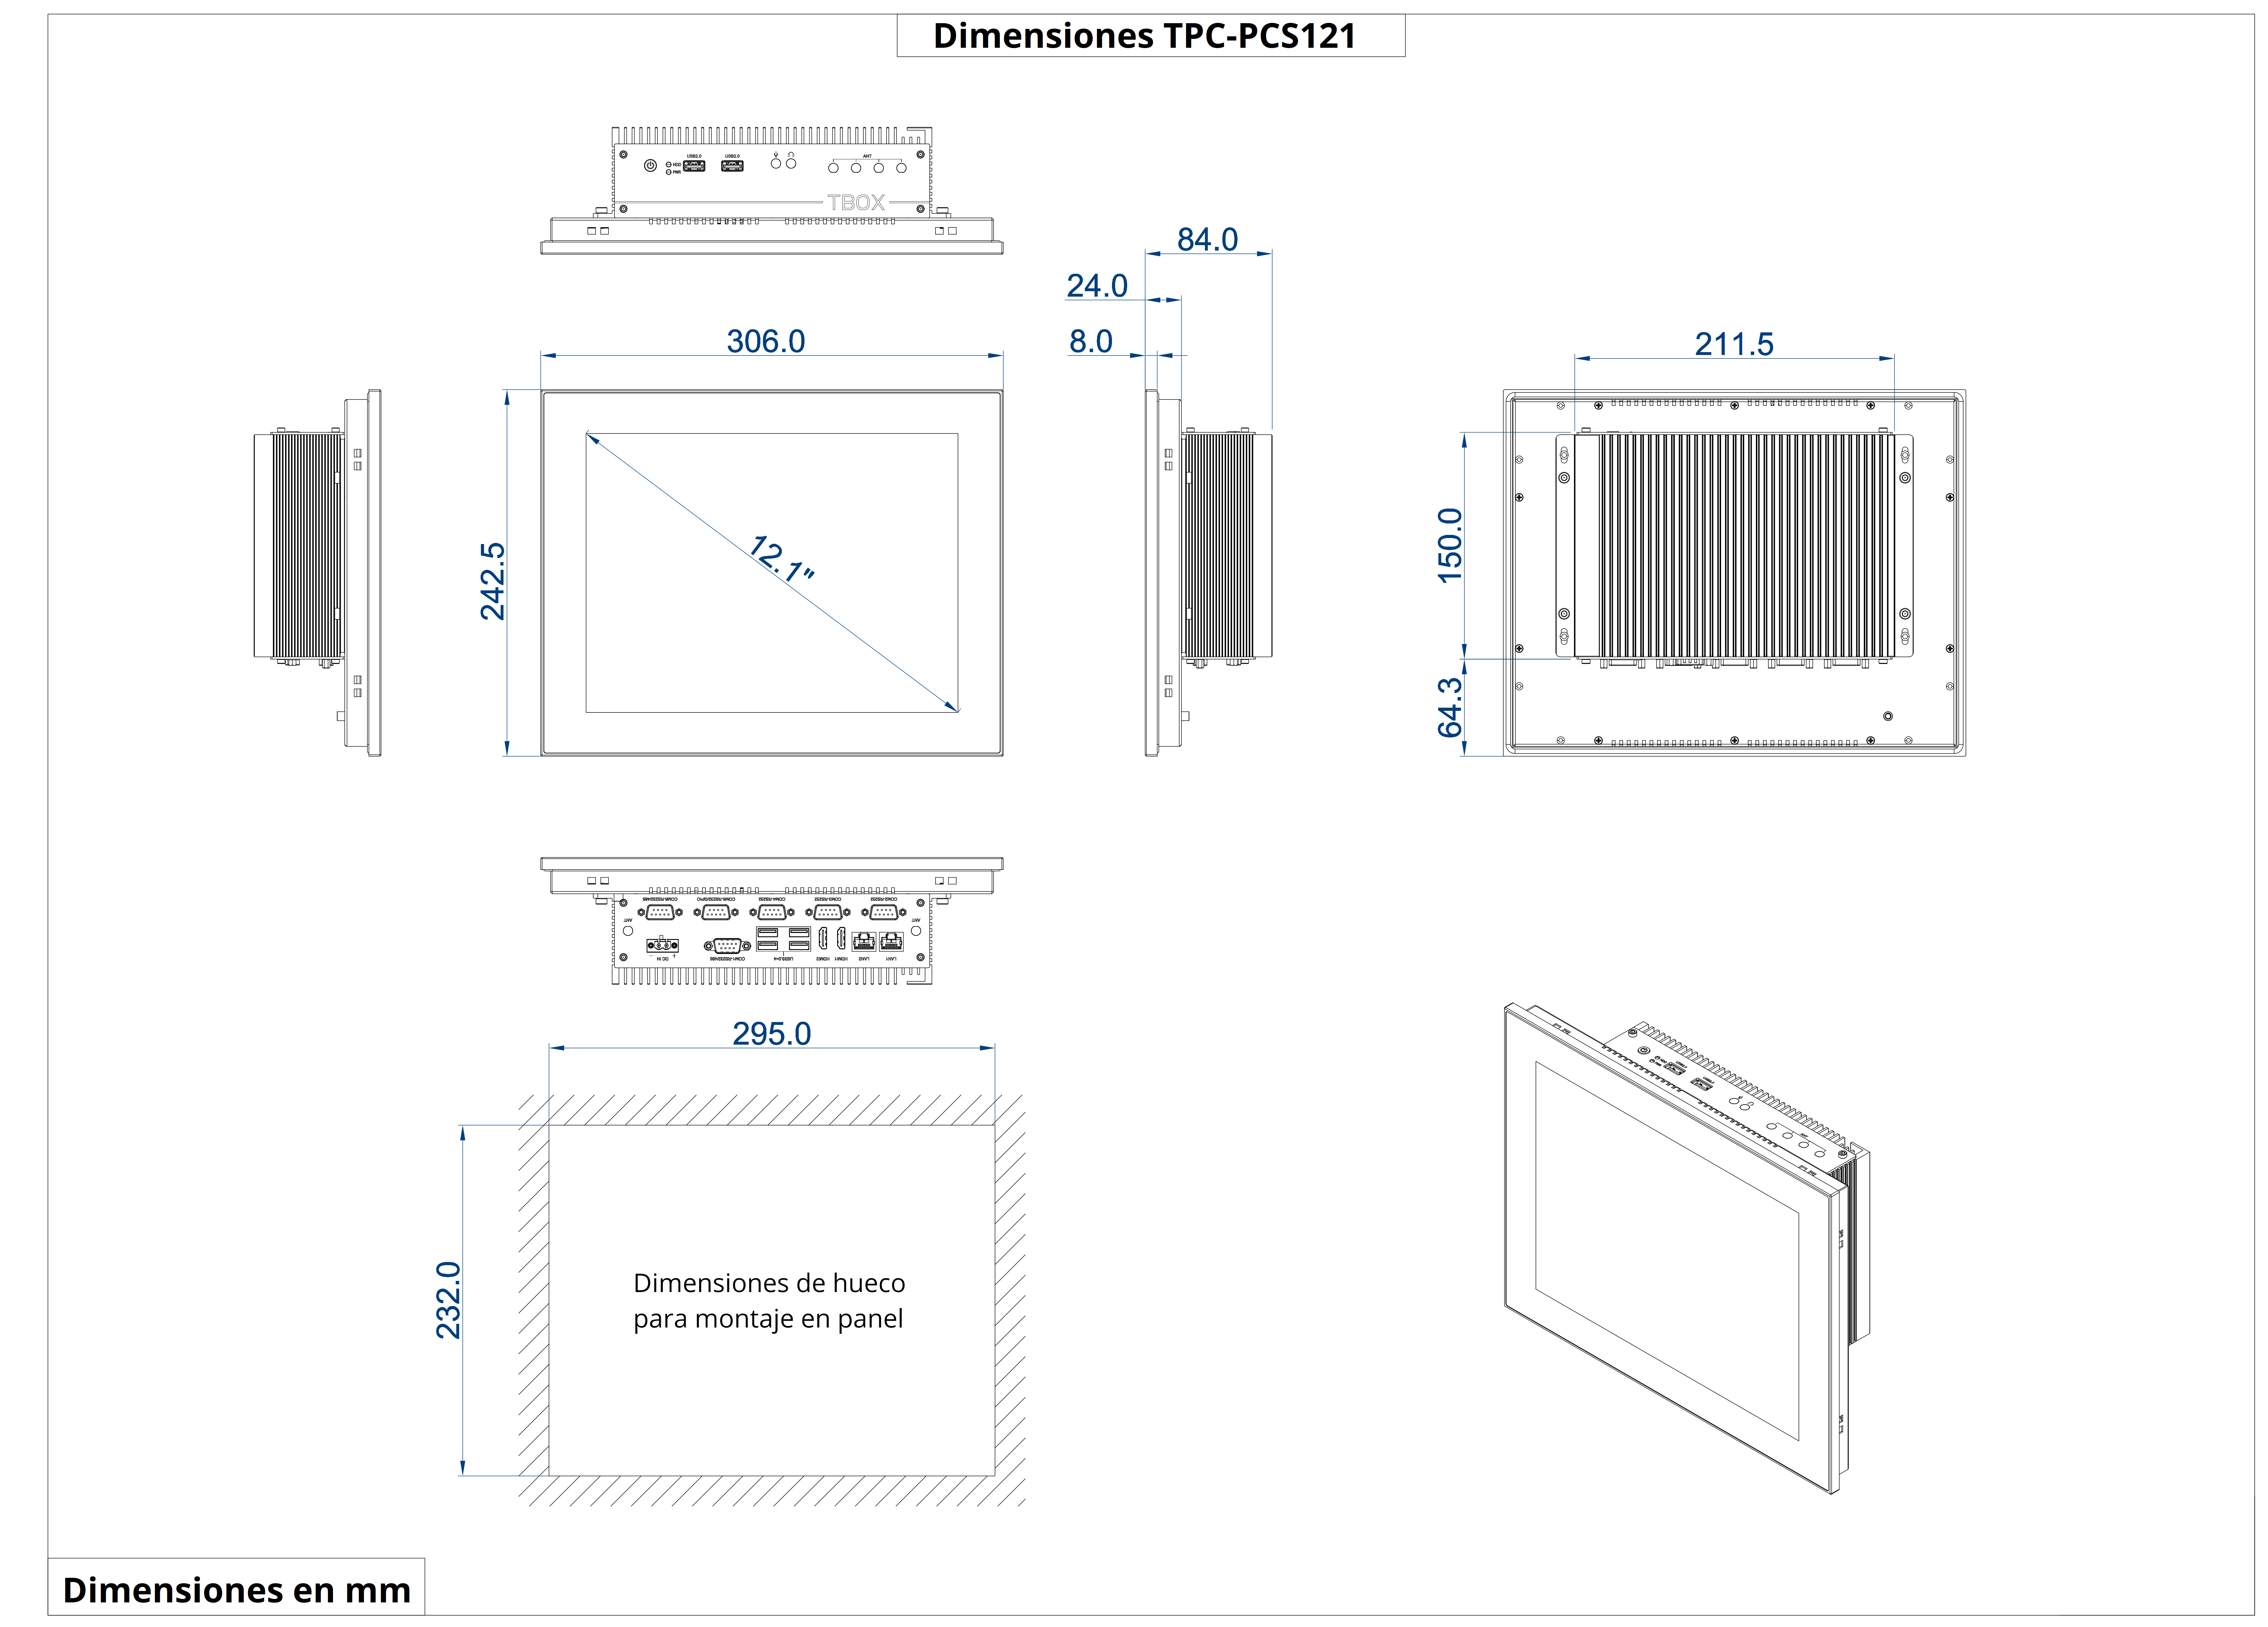 Dimensiones del producto TPC-PCS121